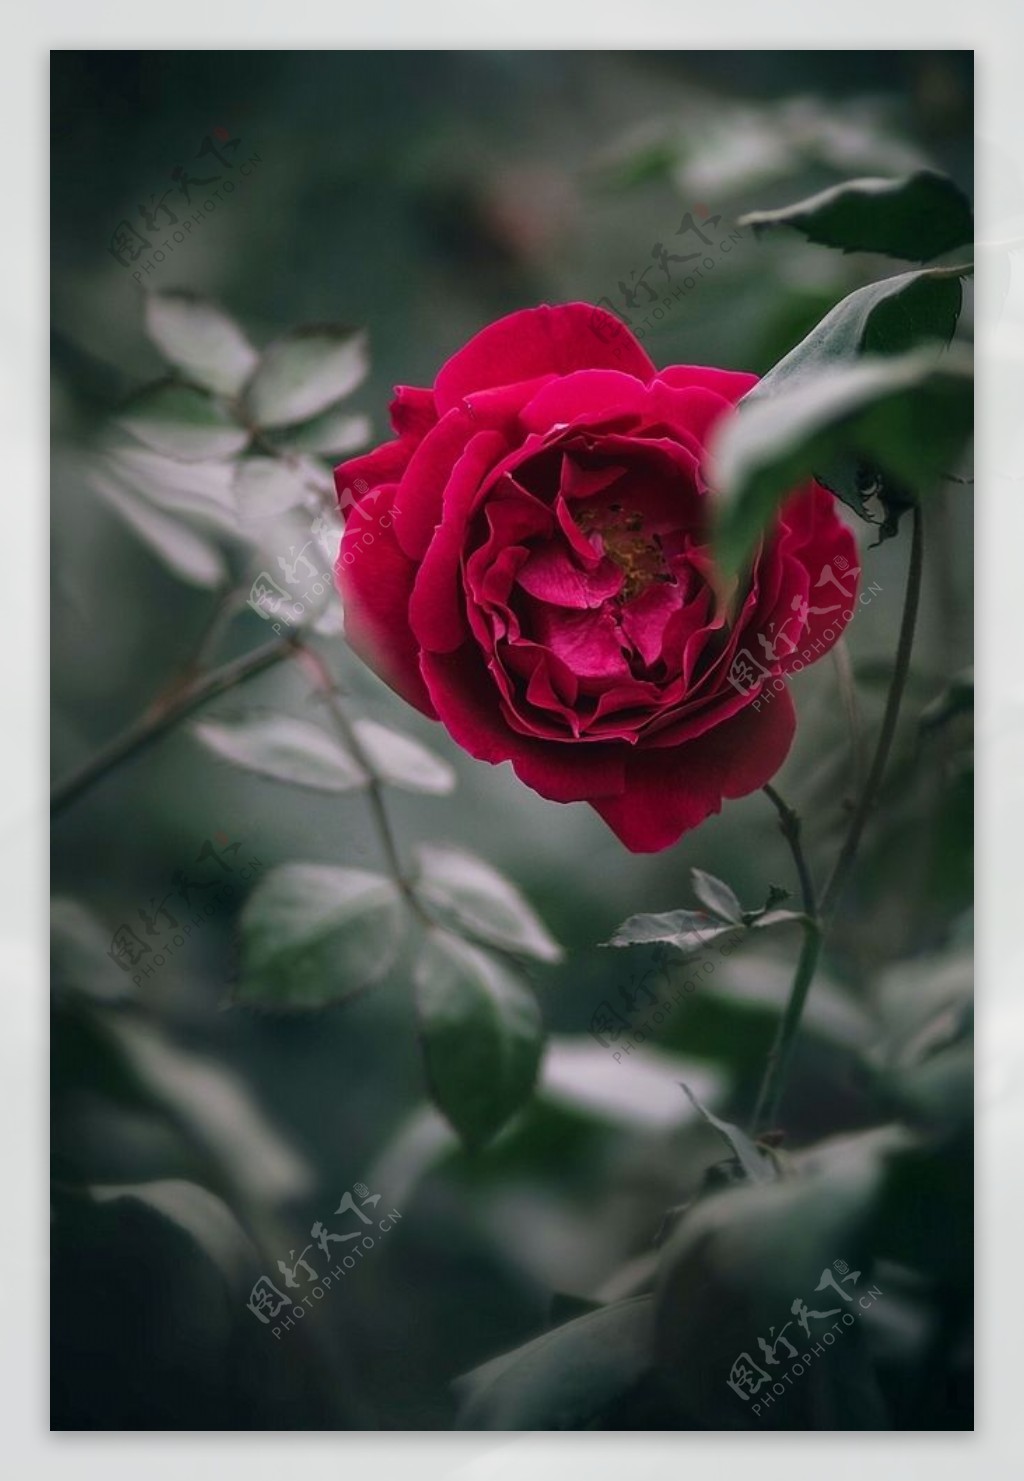 高清晰鲜红玫瑰花壁纸